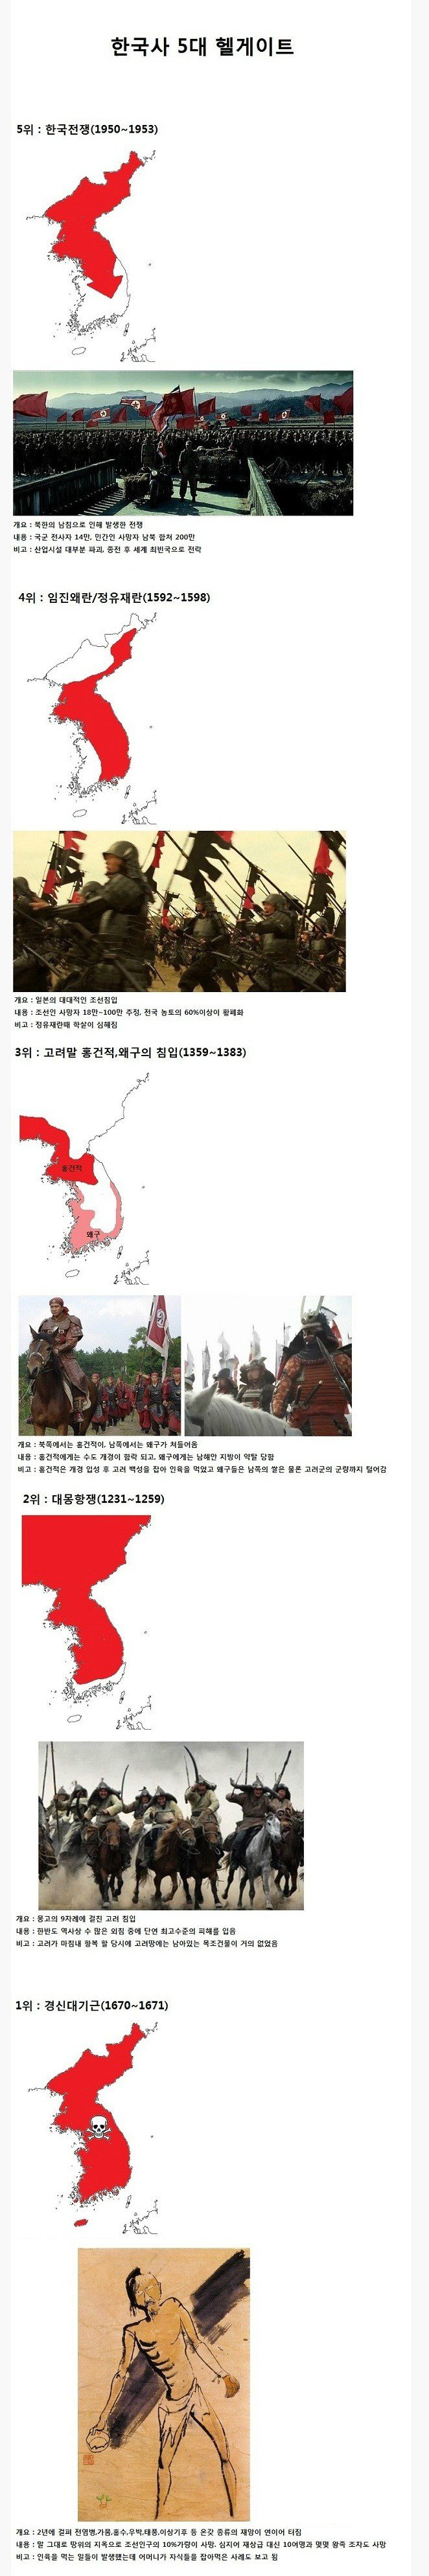 한국사 5대 헬게이트.jpg